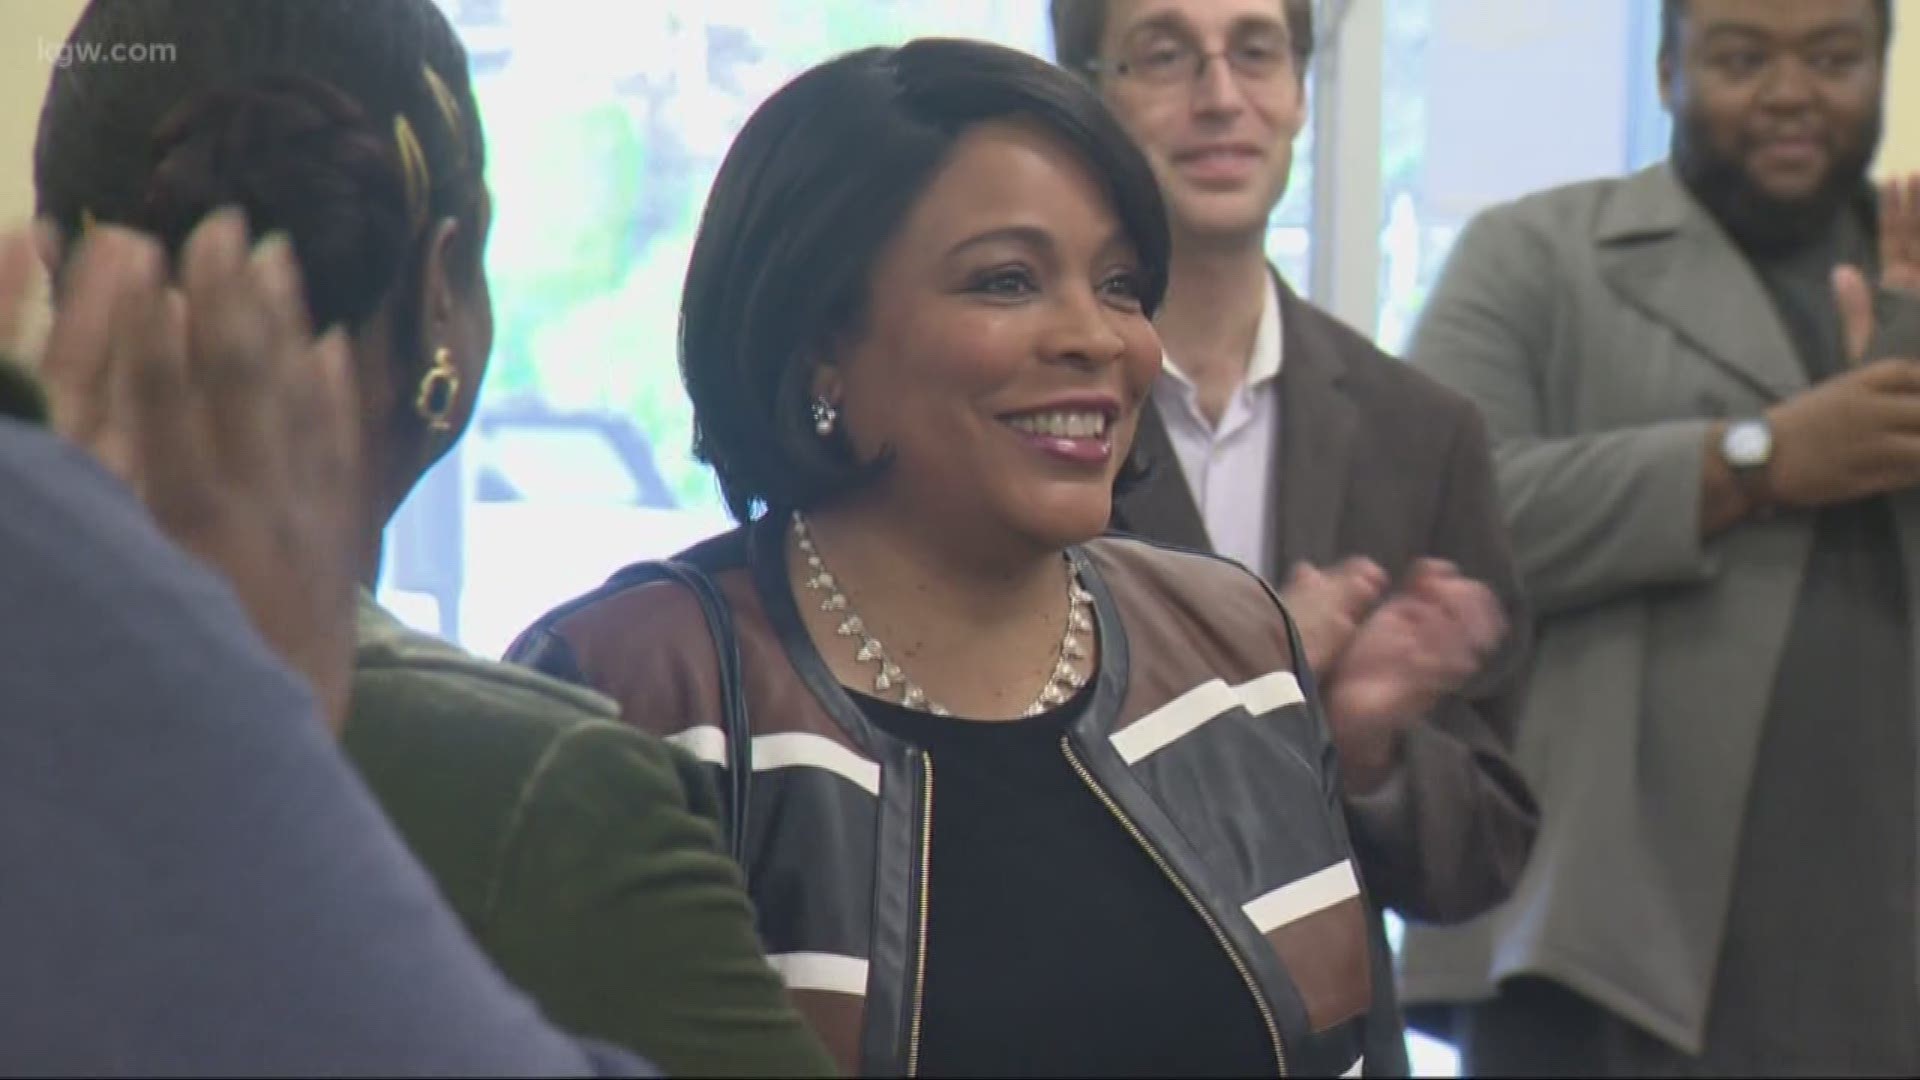 Loretta Smith kicks off city council campaign